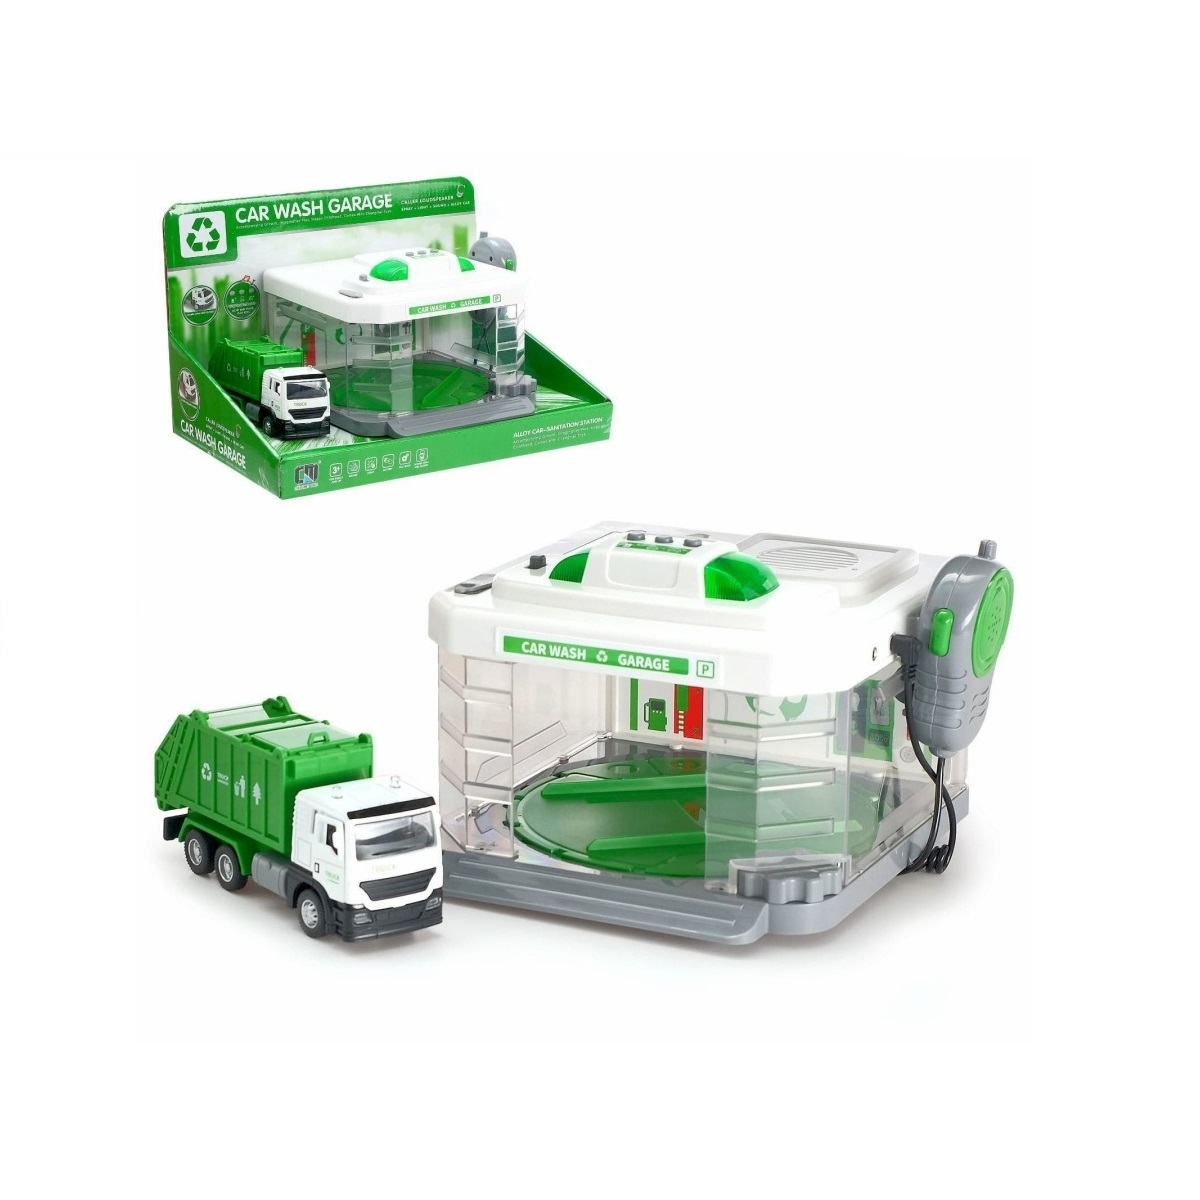 Игровой набор "Автомойка-парковка" с грузовой машиной мусоровоз, со световыми и звуковыми эффектами и водой (CLM-887)